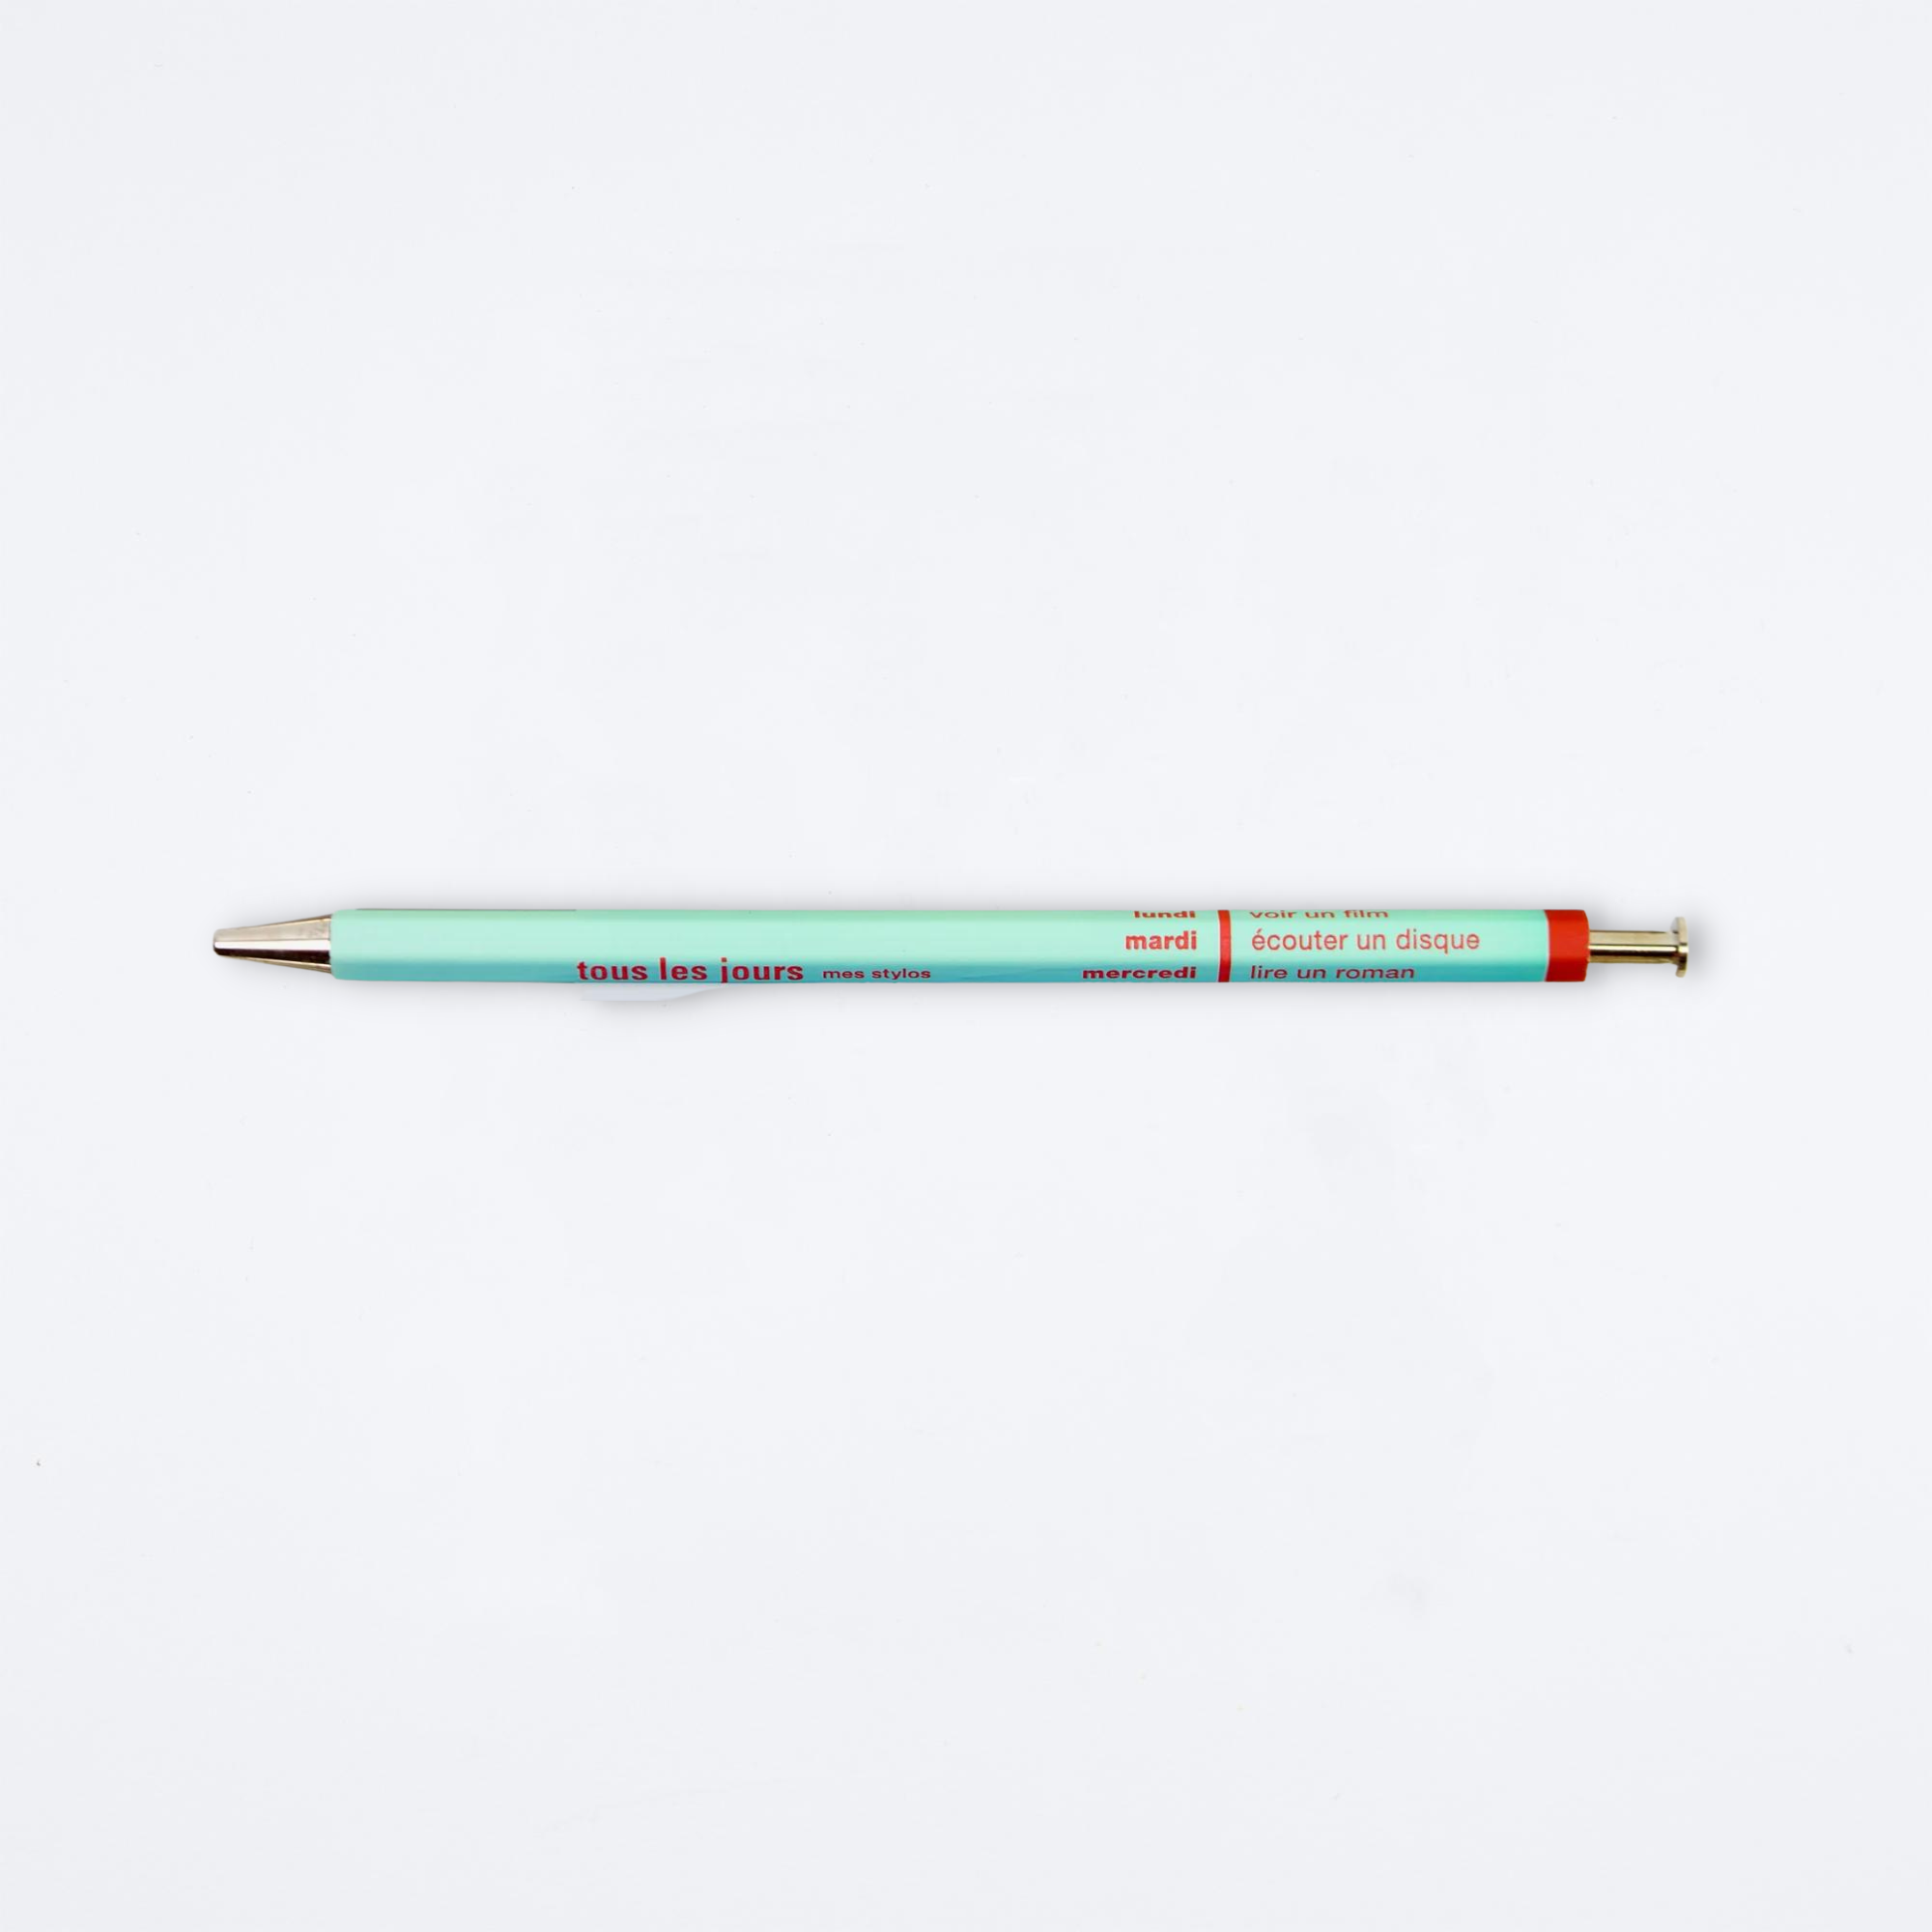 Tous Les Jours Days Wooden Needle-Point Pen by Mark's – Little Otsu